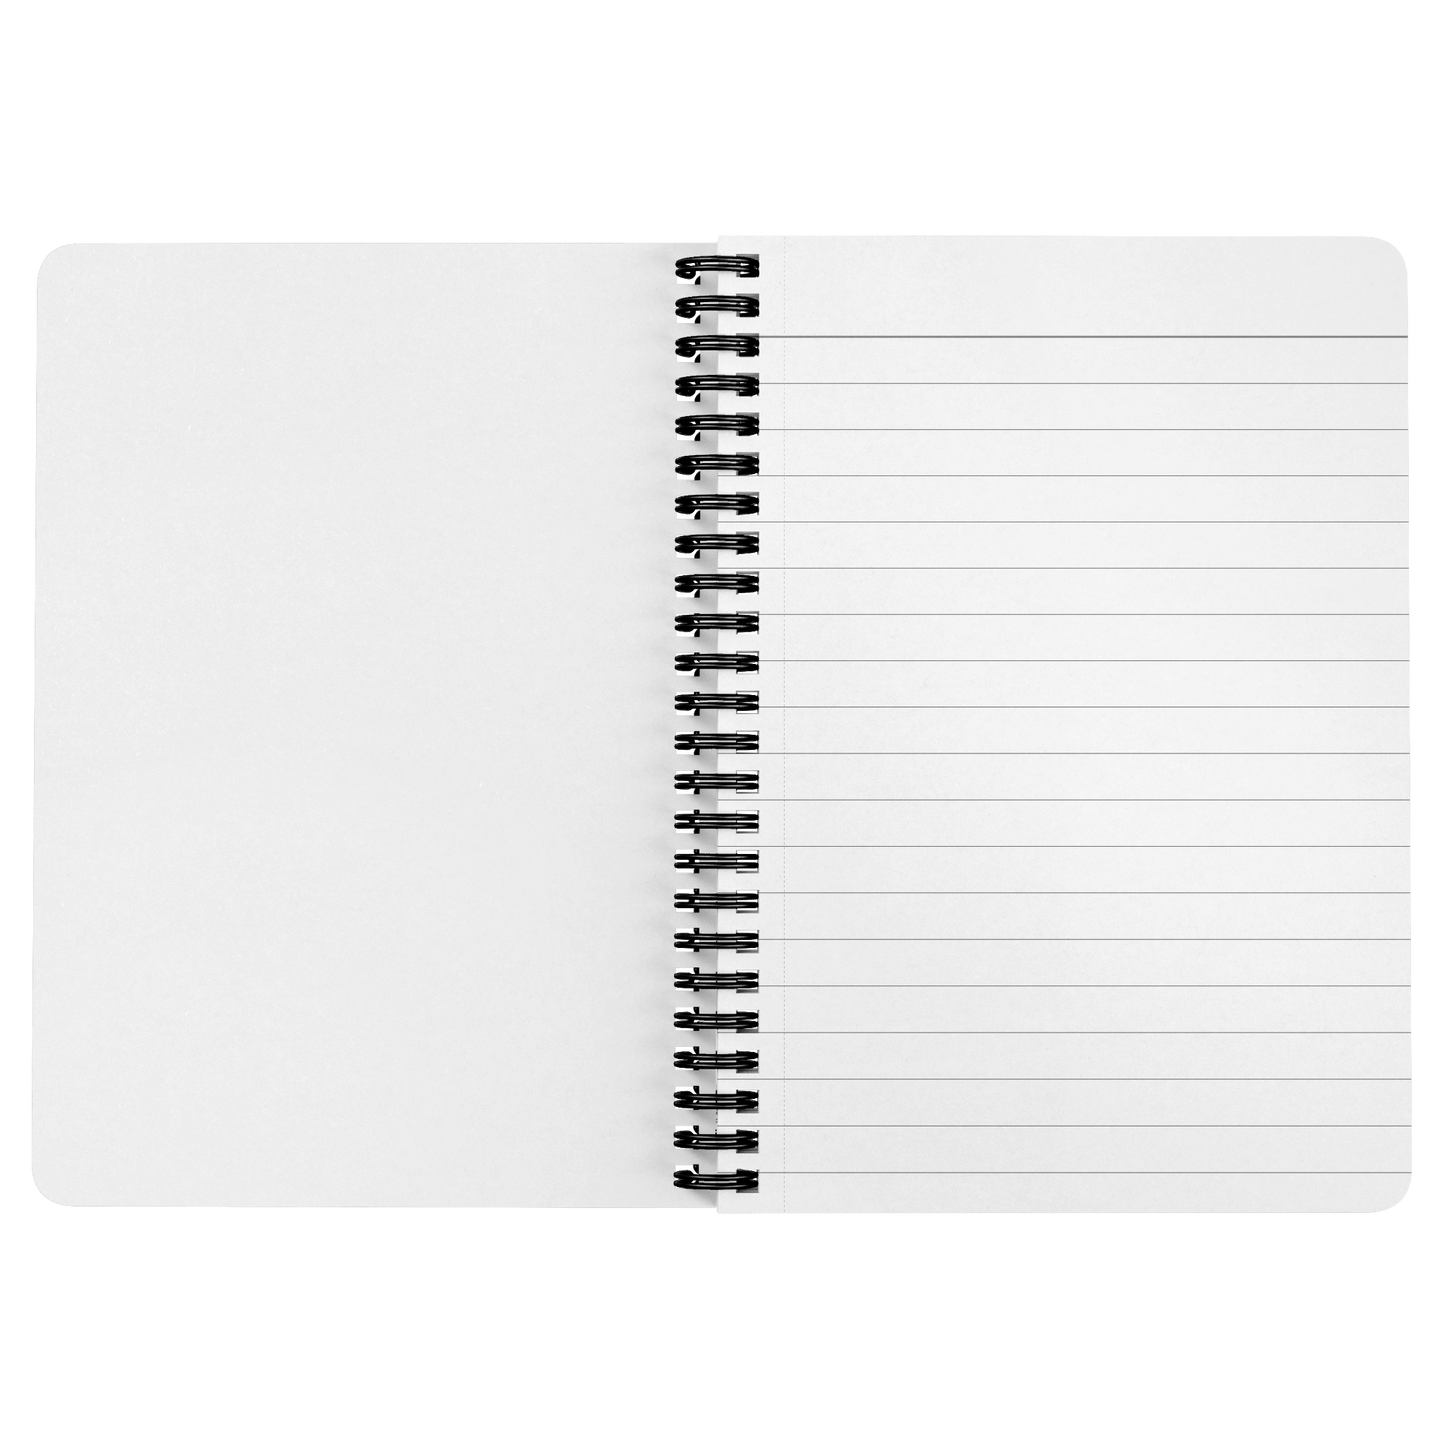 Notebook Journal Spiral School Writing Journal Lined Personal Spiral Notebook